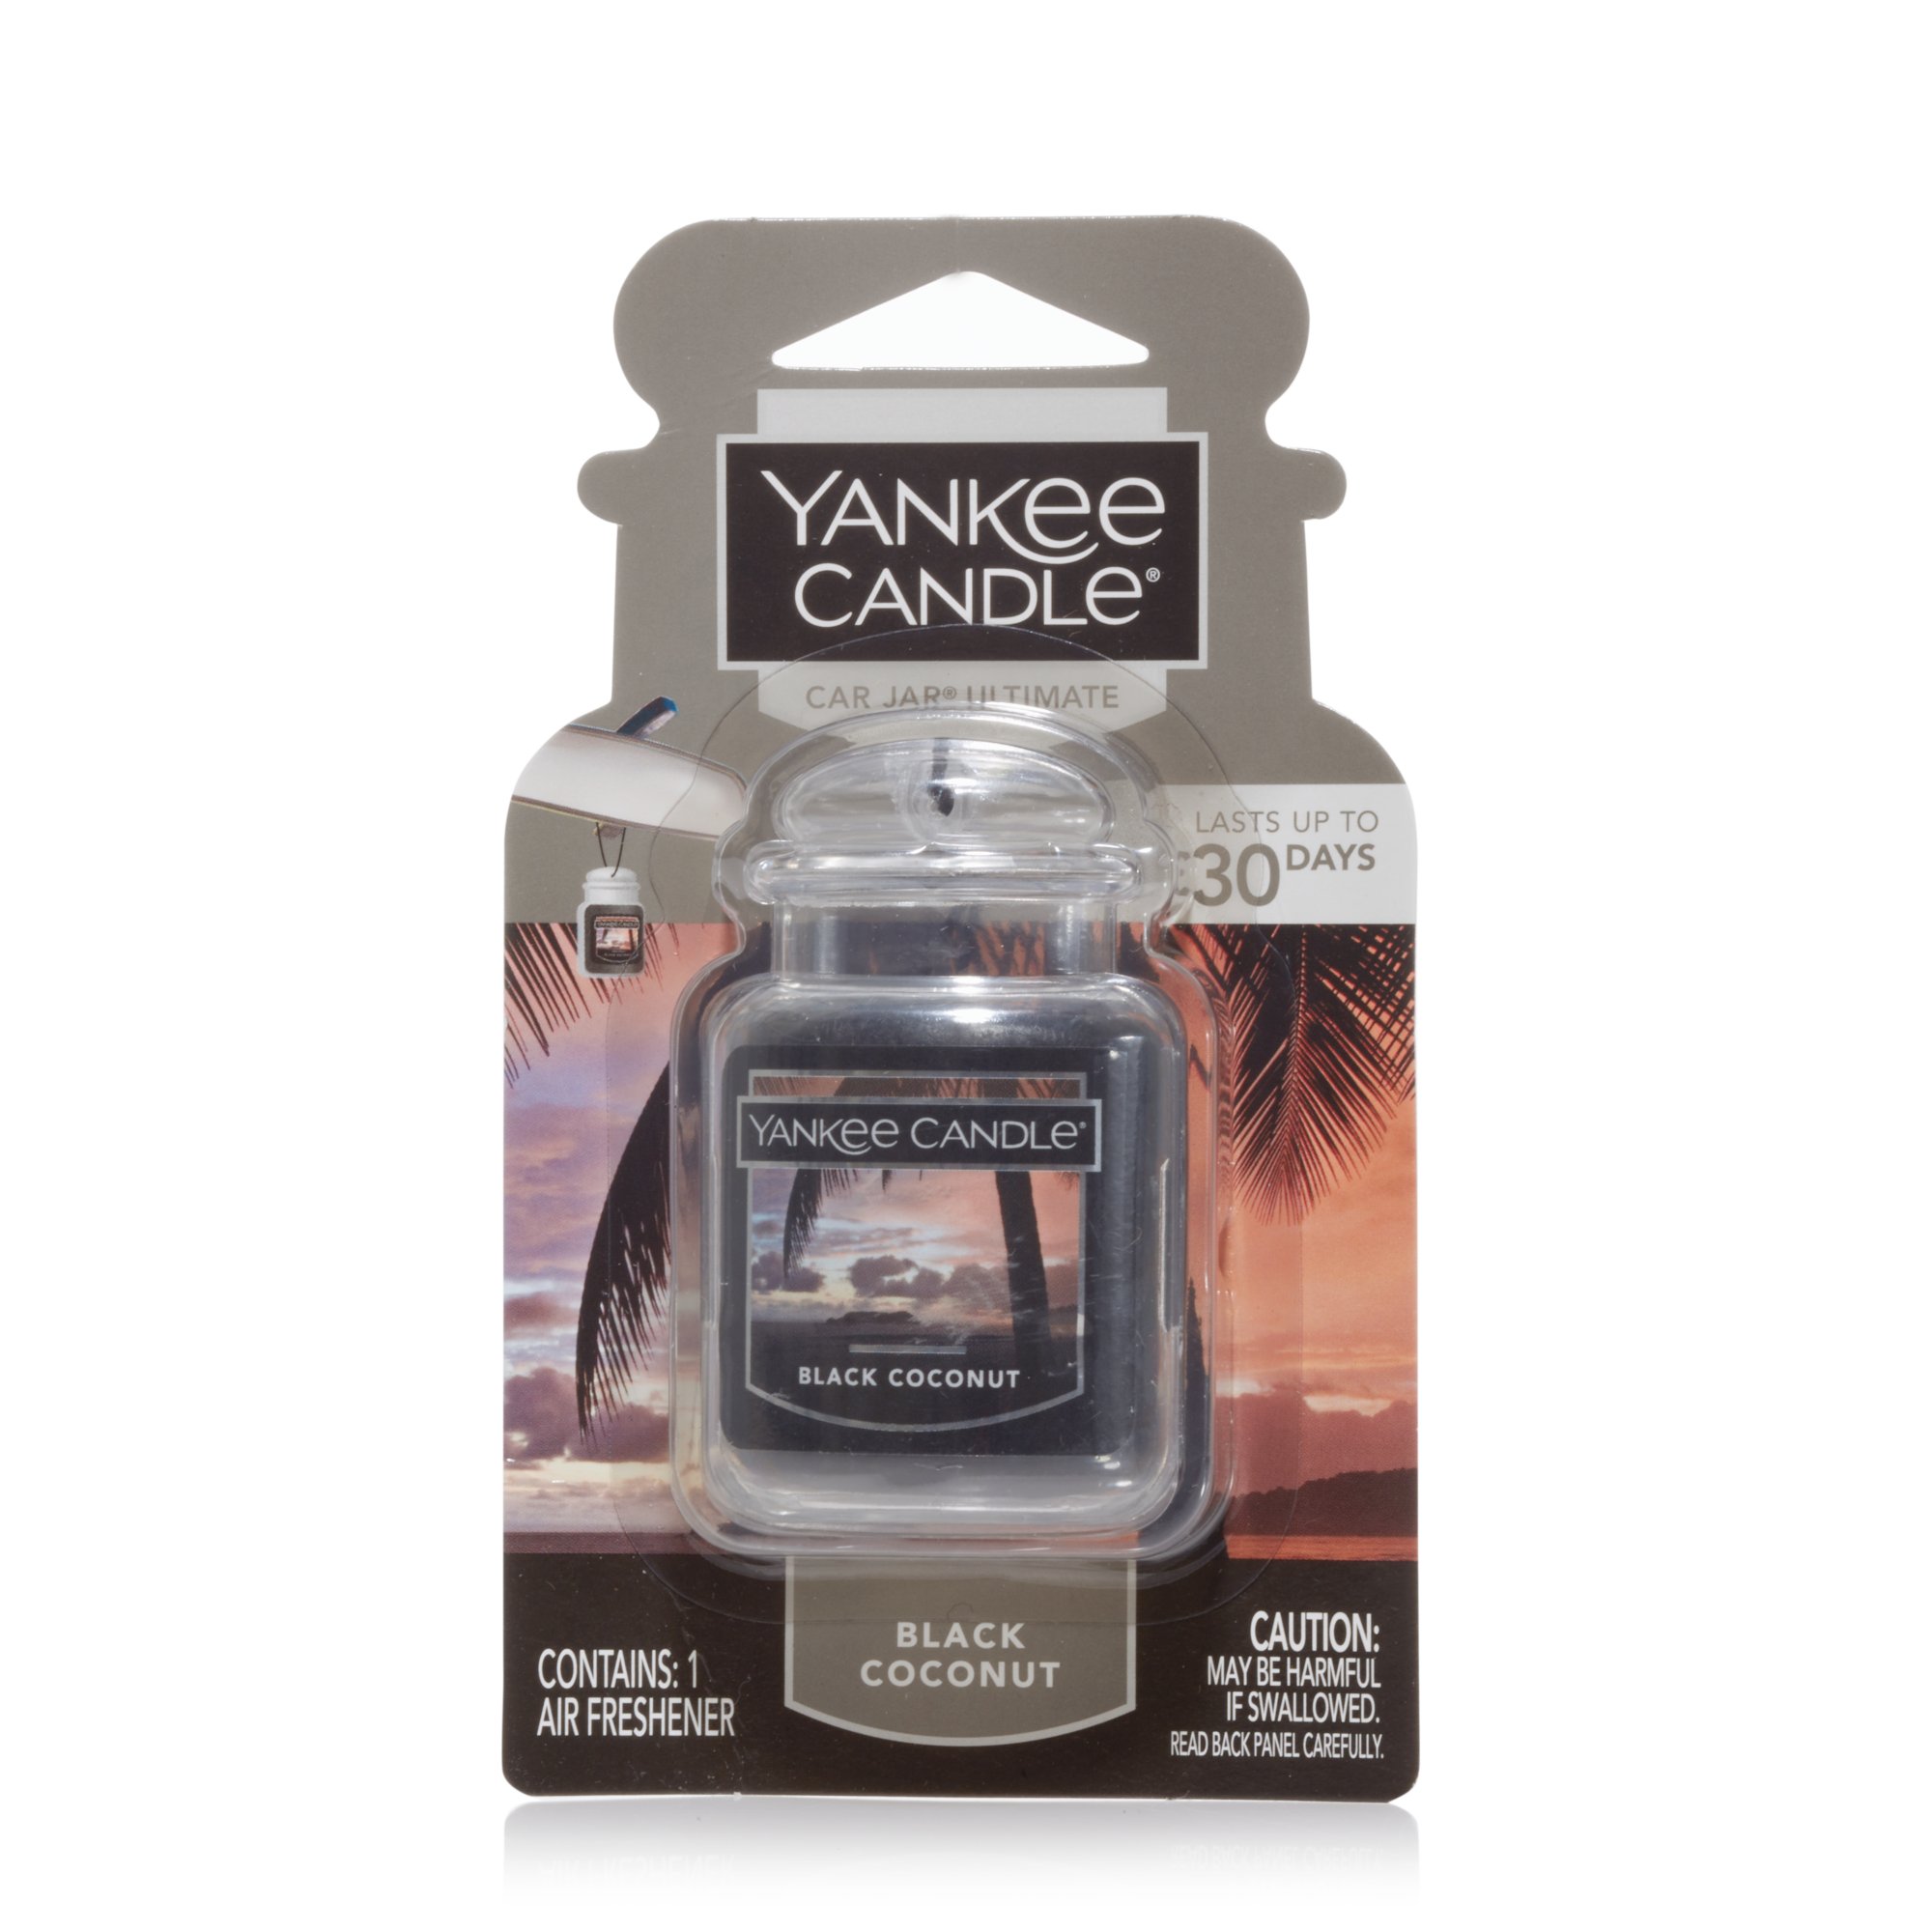 Diffuseur de parfum pour voiture, Plage de noix de coco Yankee Candle Car  Jar Ultimate Coconut Beach